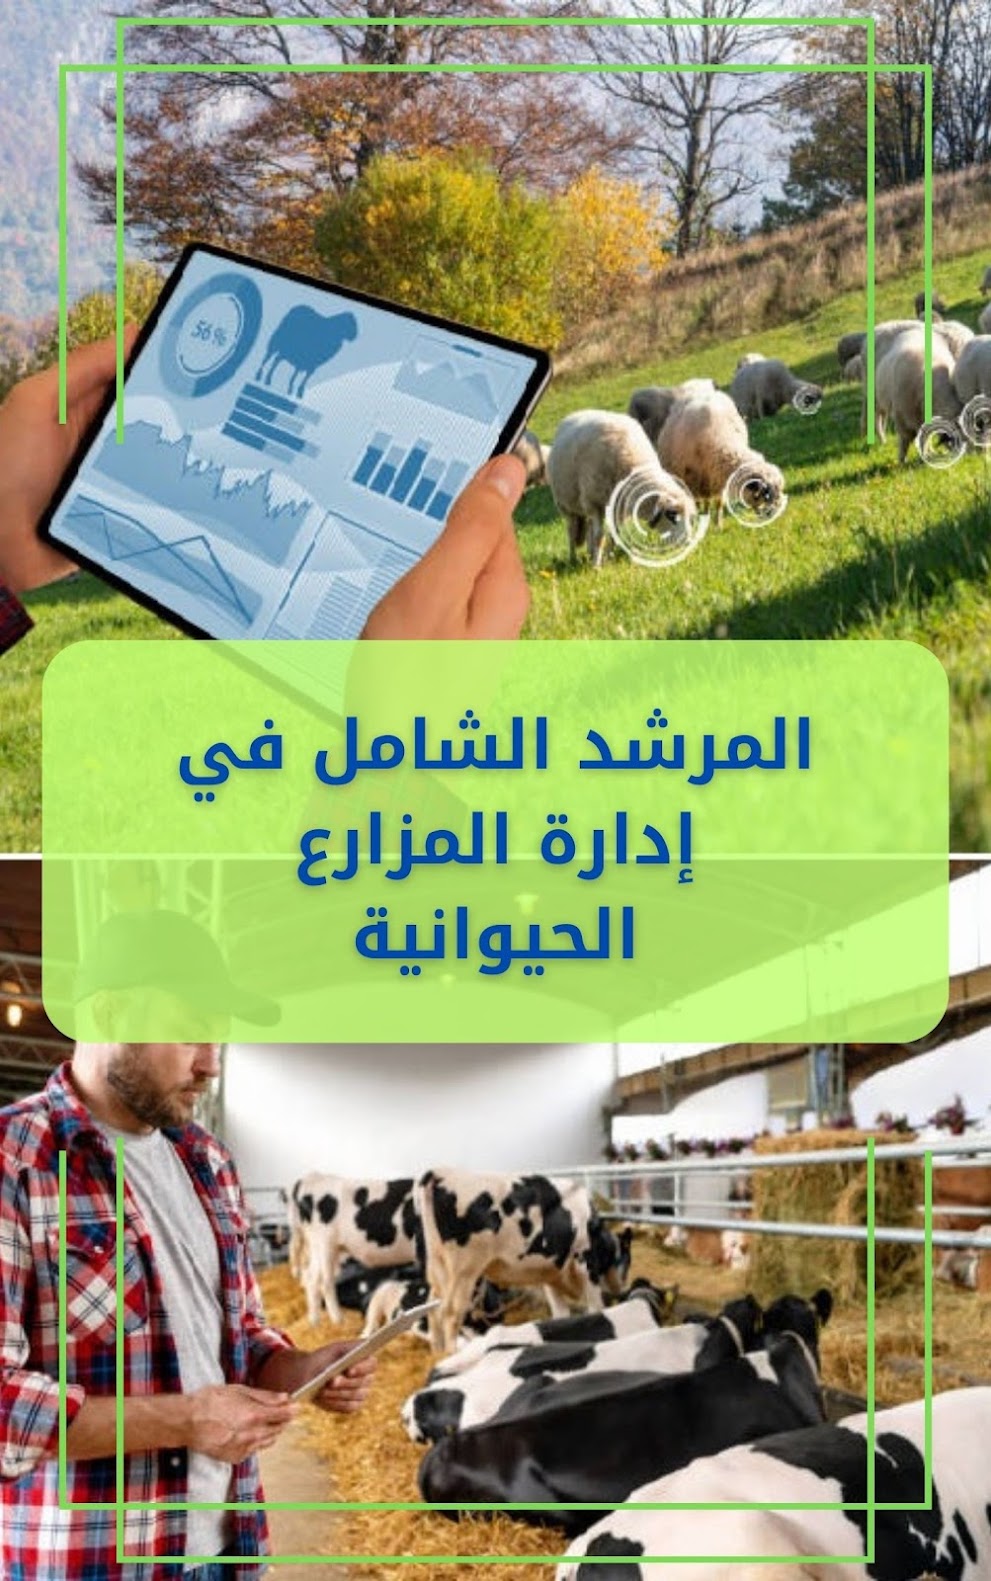 كتاب : المرشد الشامل في إدارة المزارع الحيوانية